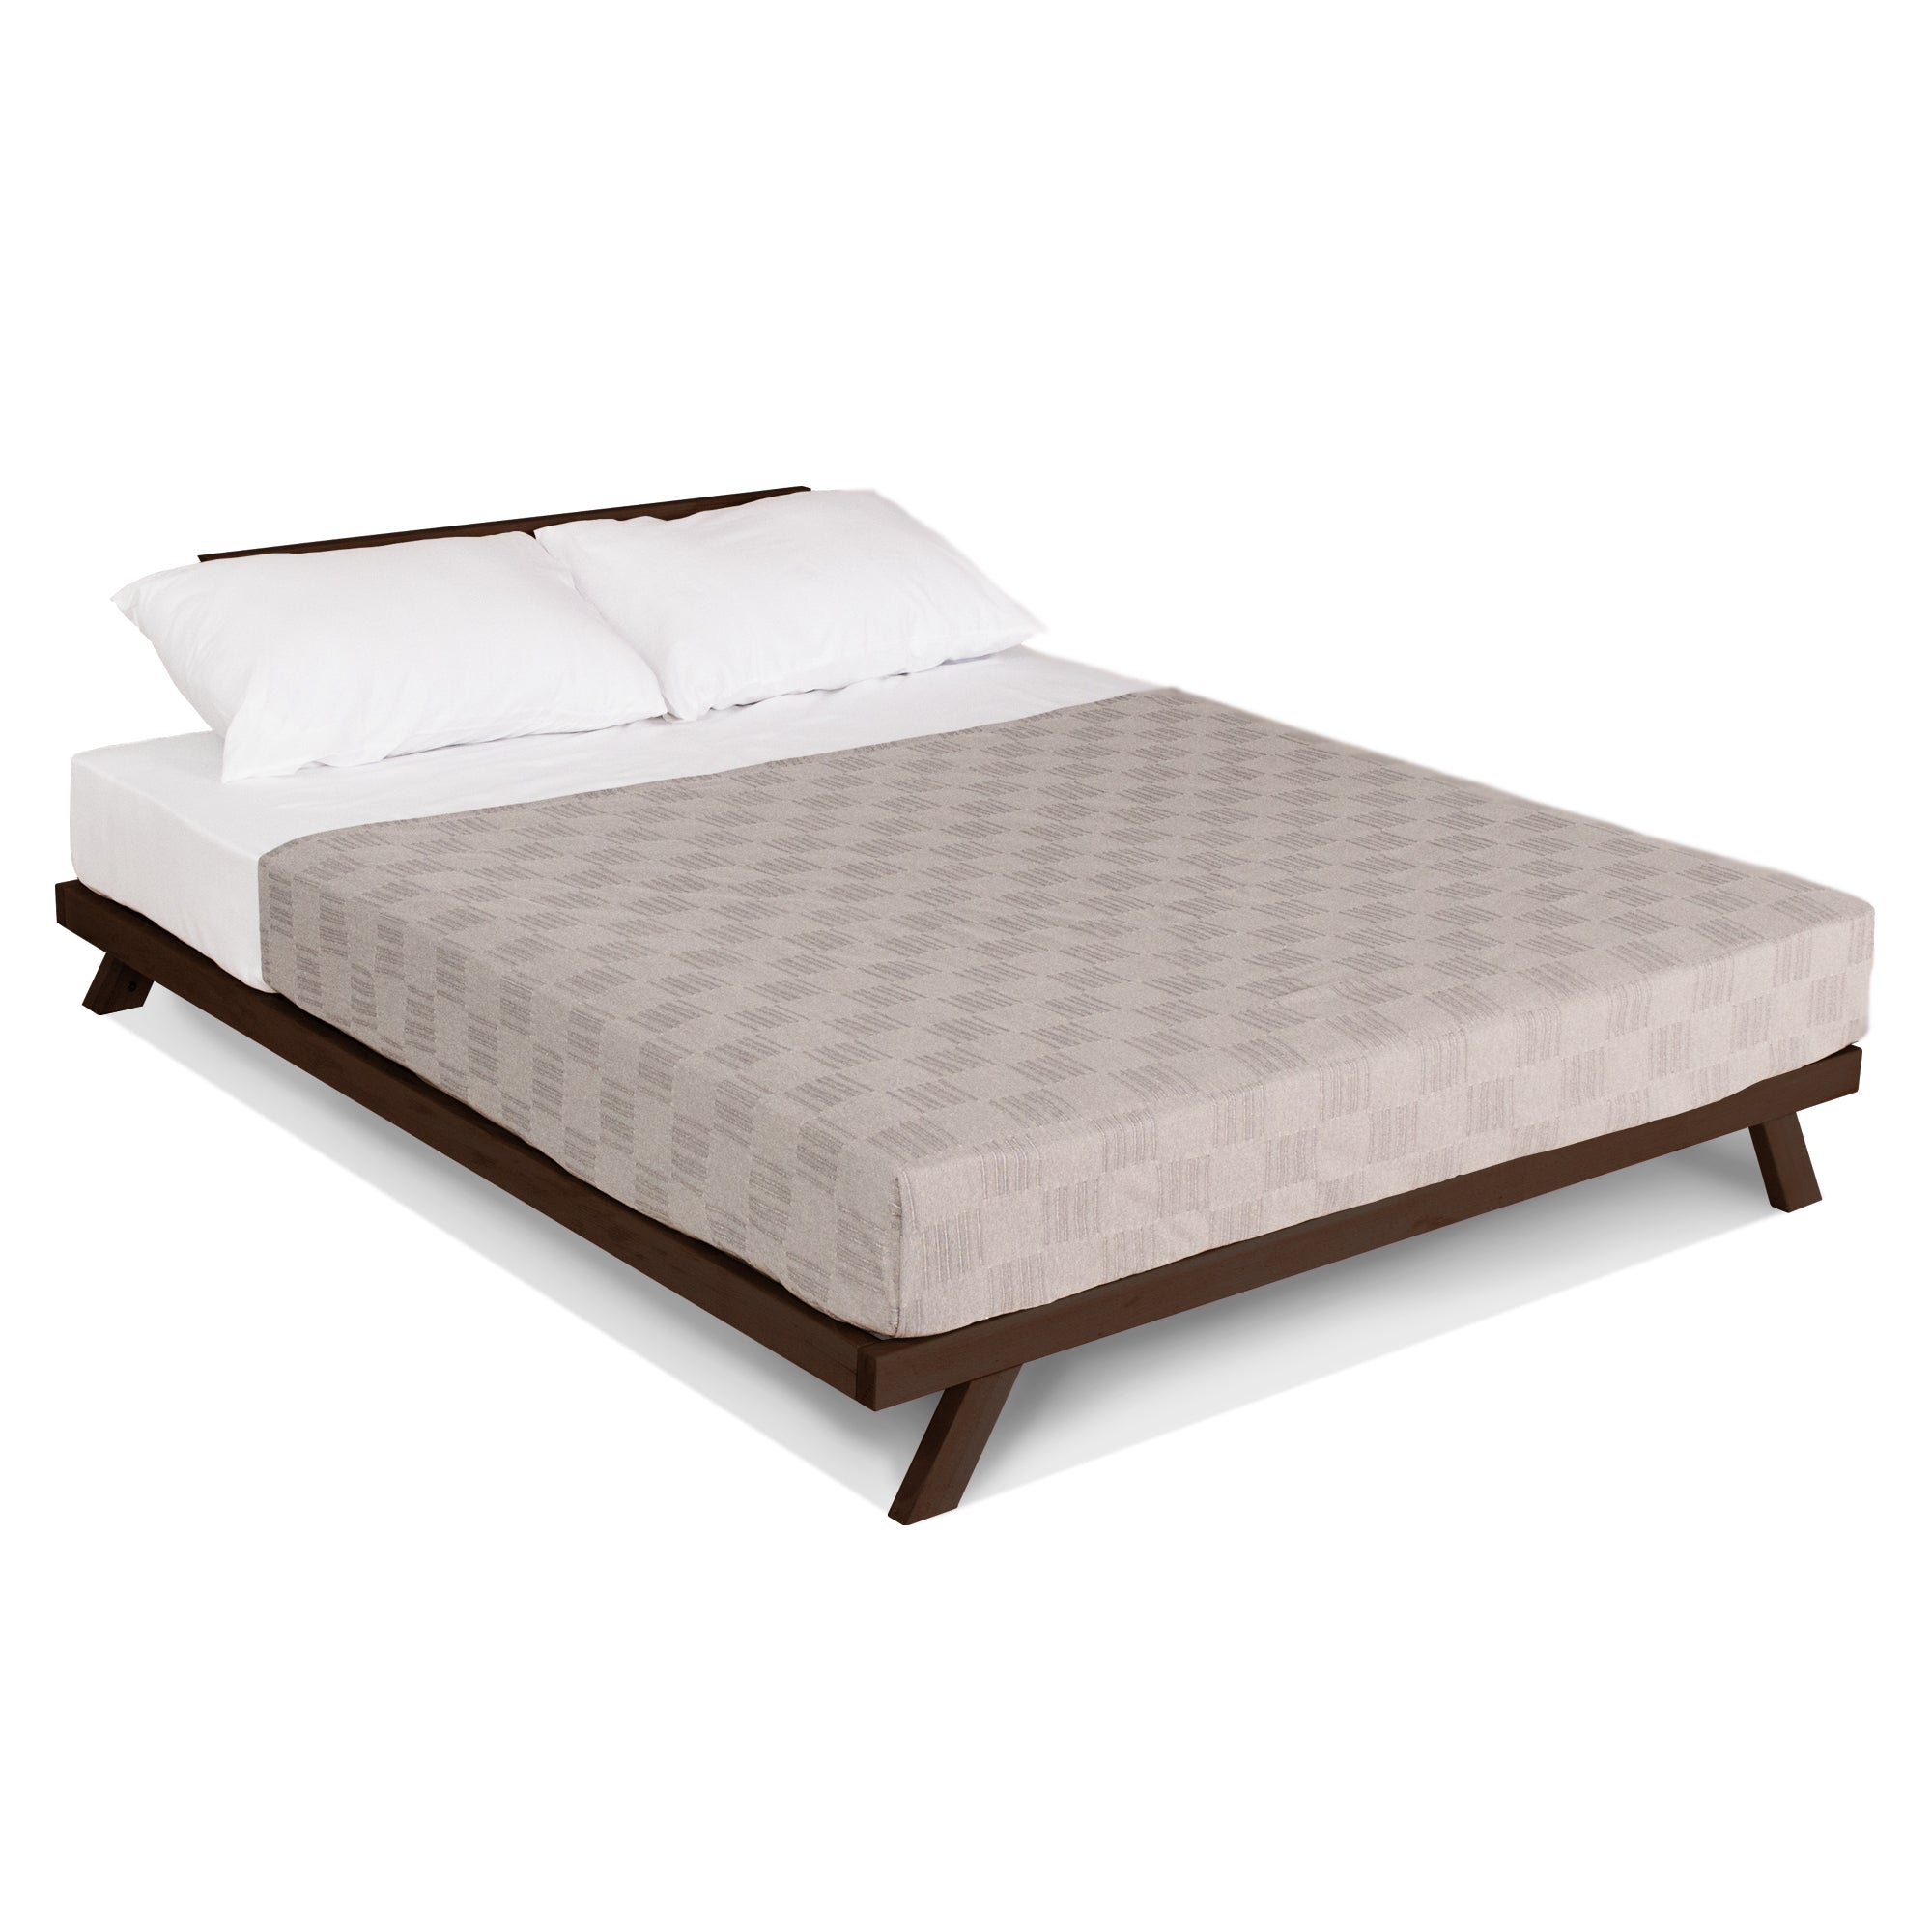 Двоспальне ліжко ALLEGRO, каркас шоколадного кольору